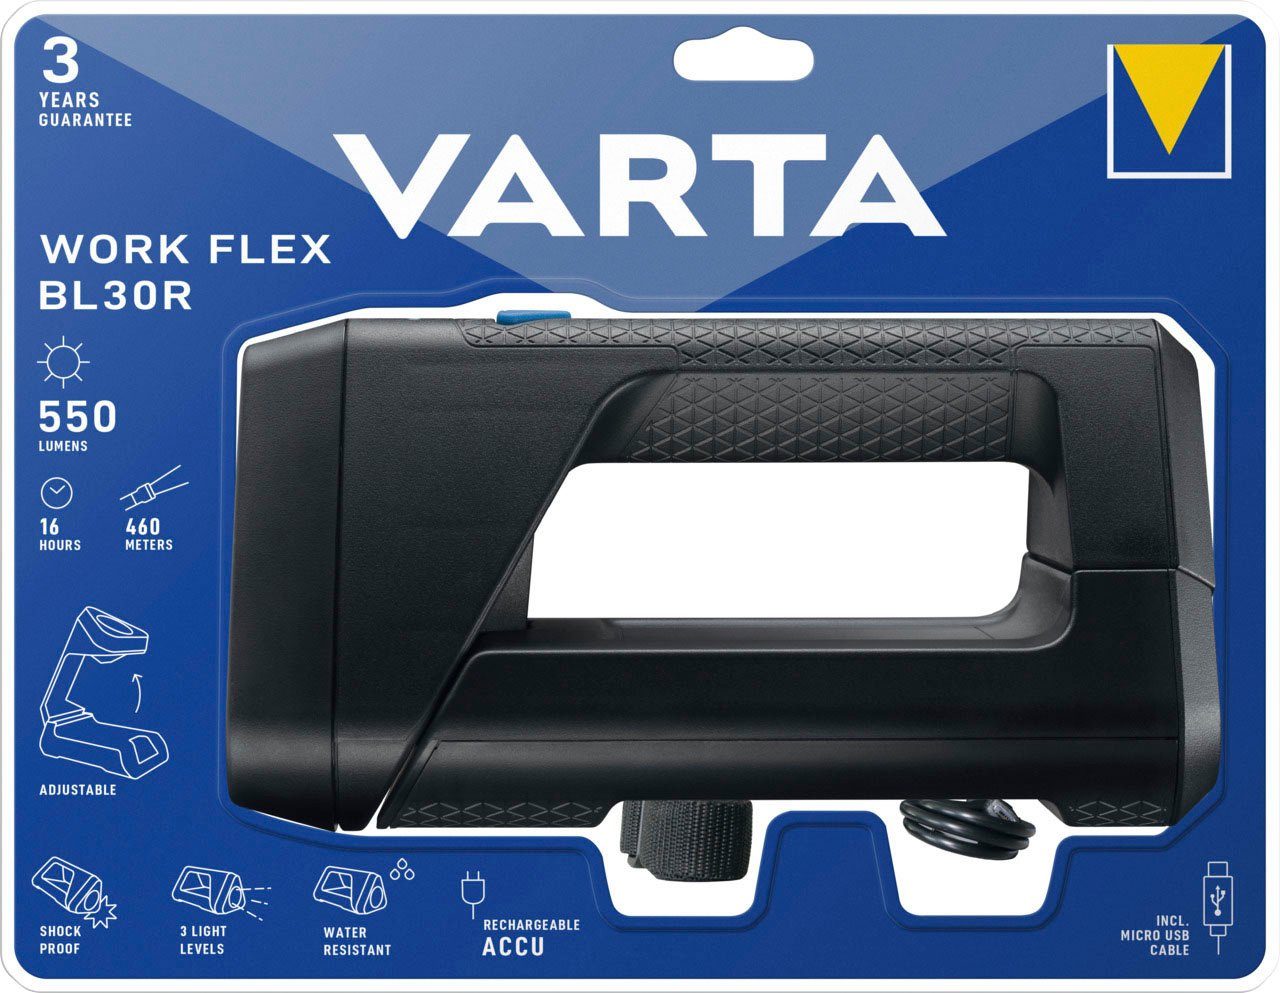 VARTA Taschenlampe BL30R Work Flex